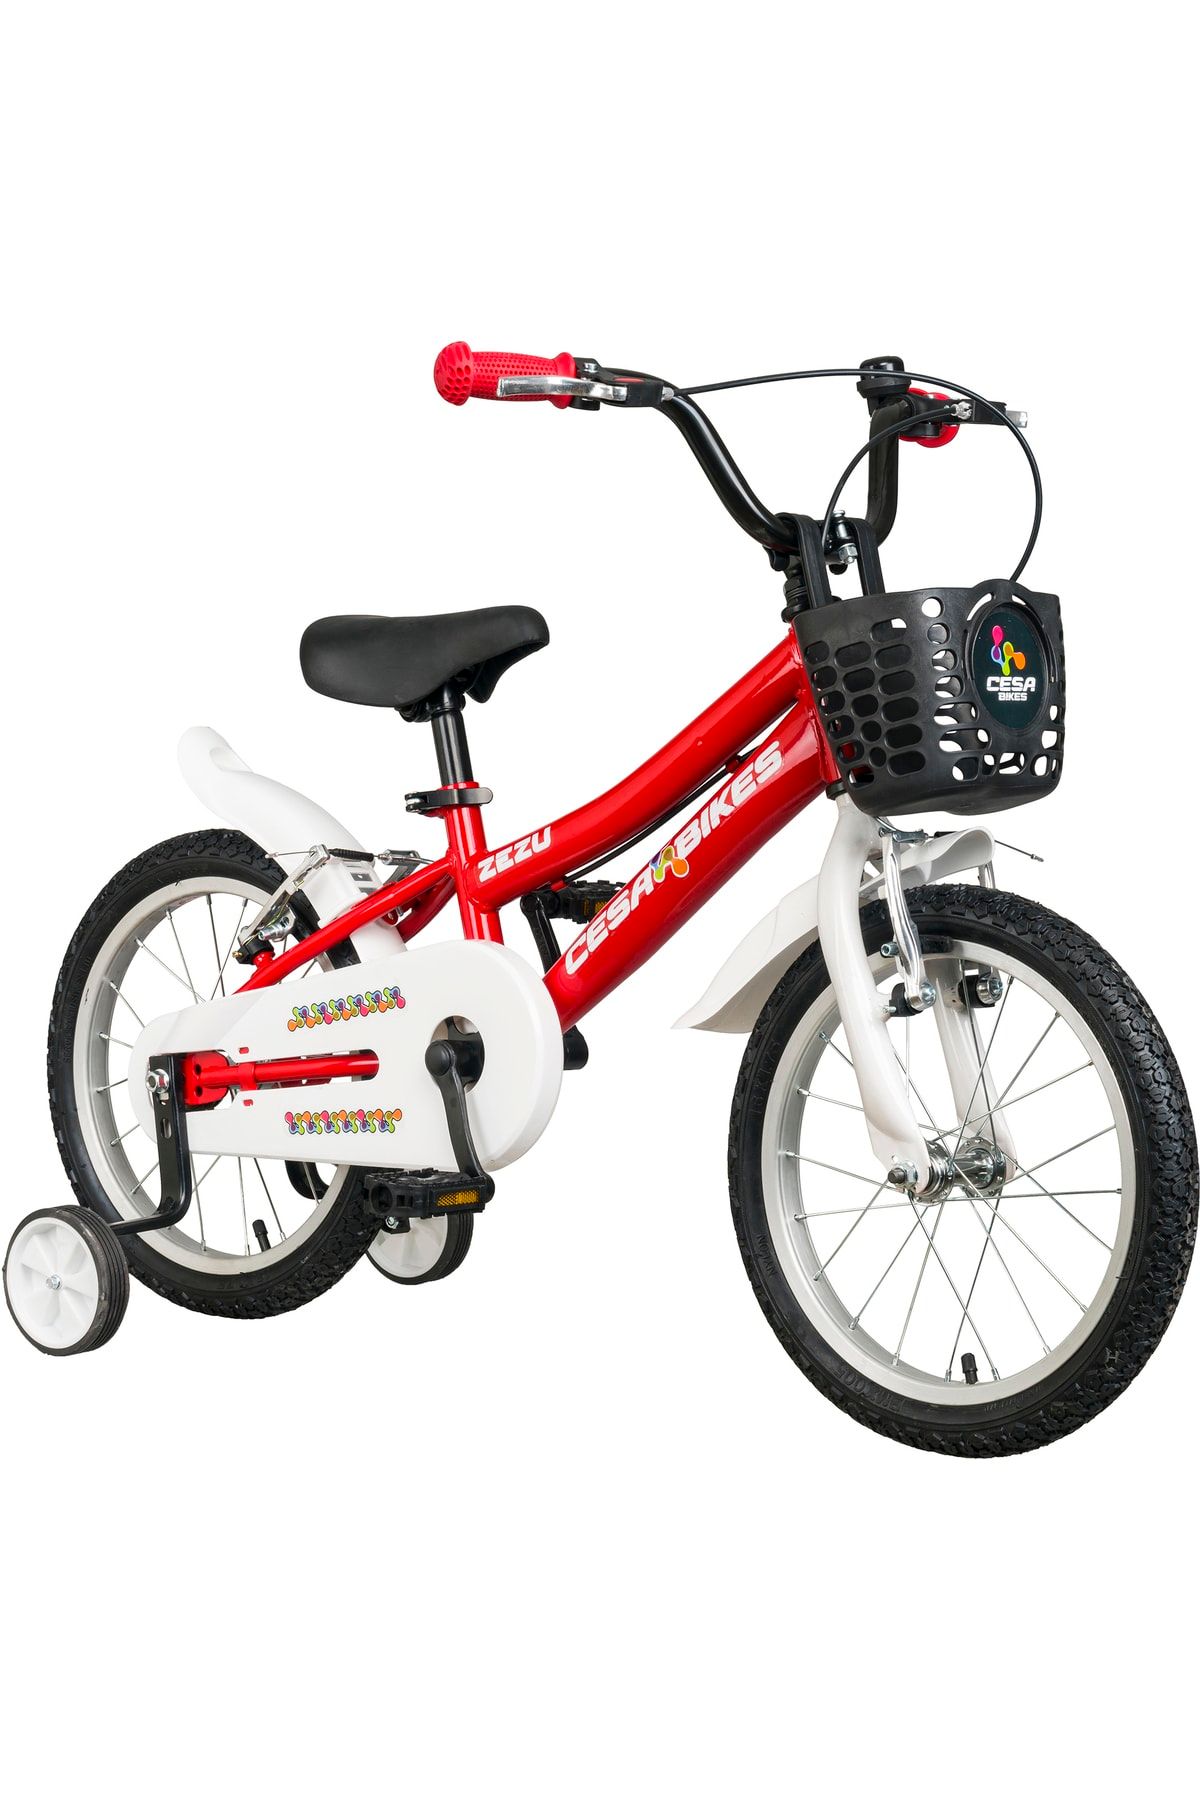 Cesa Bisiklet Cesa Bike Zezu Lüx Model 16 Jant Bisiklet 4-7 Yaş Kırmızı-beyaz Çocuk Bisikleti